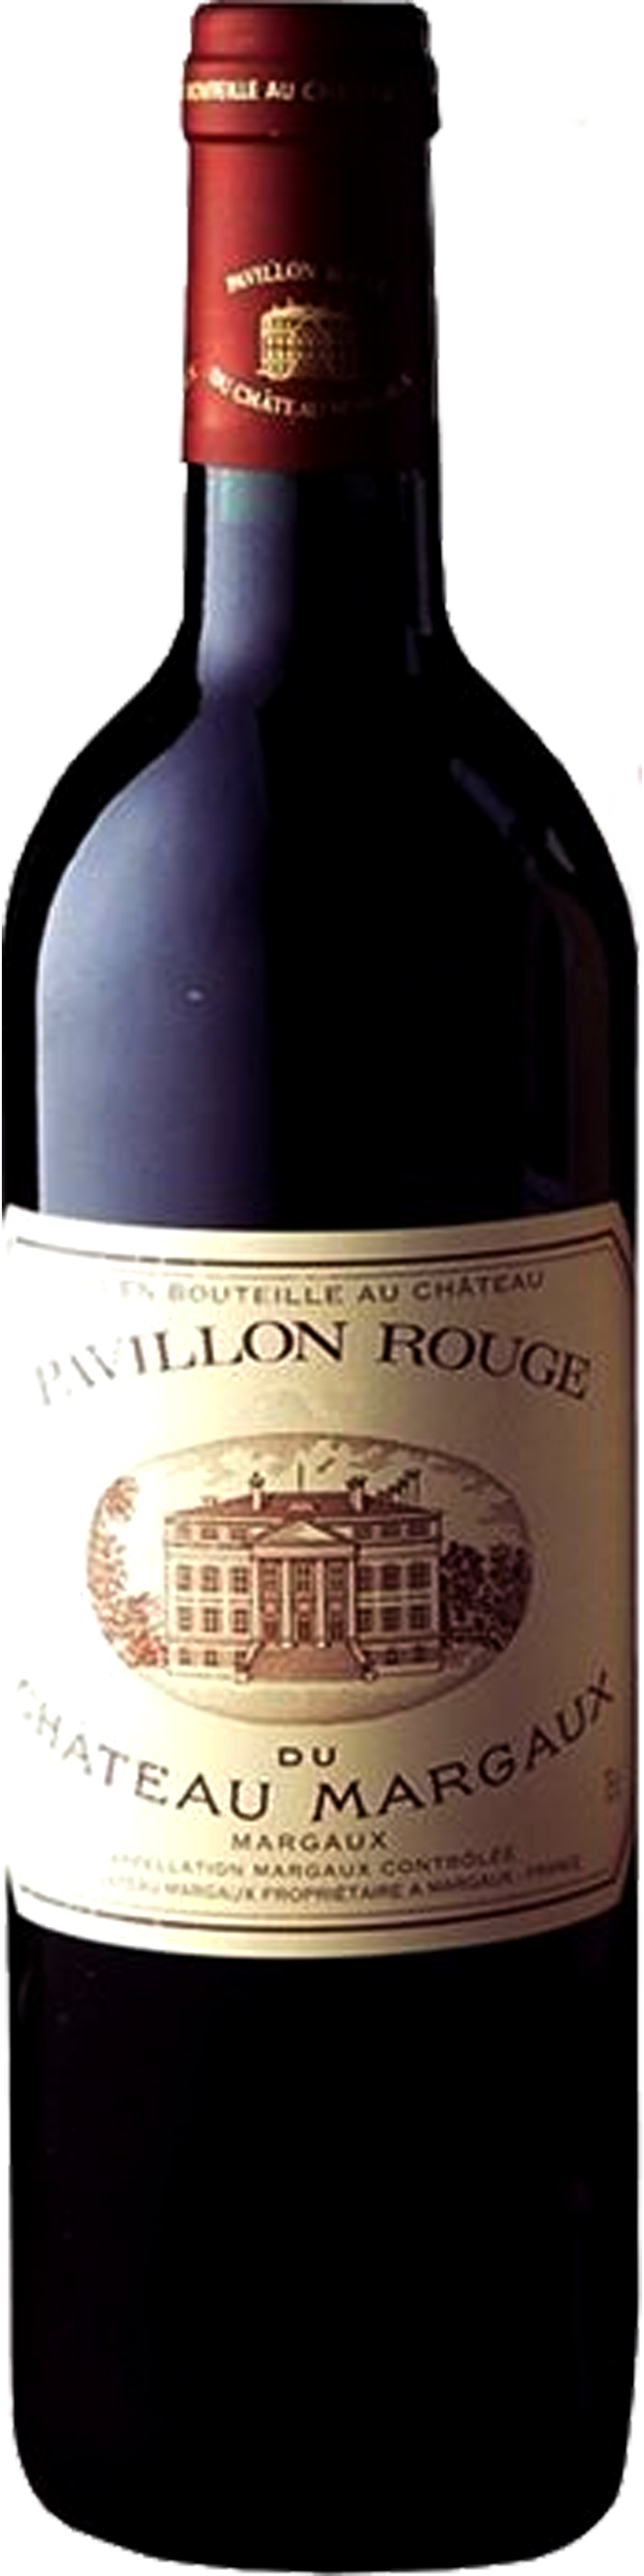 Bottle shot of 2005 Pavillon Rouge du Château Margaux